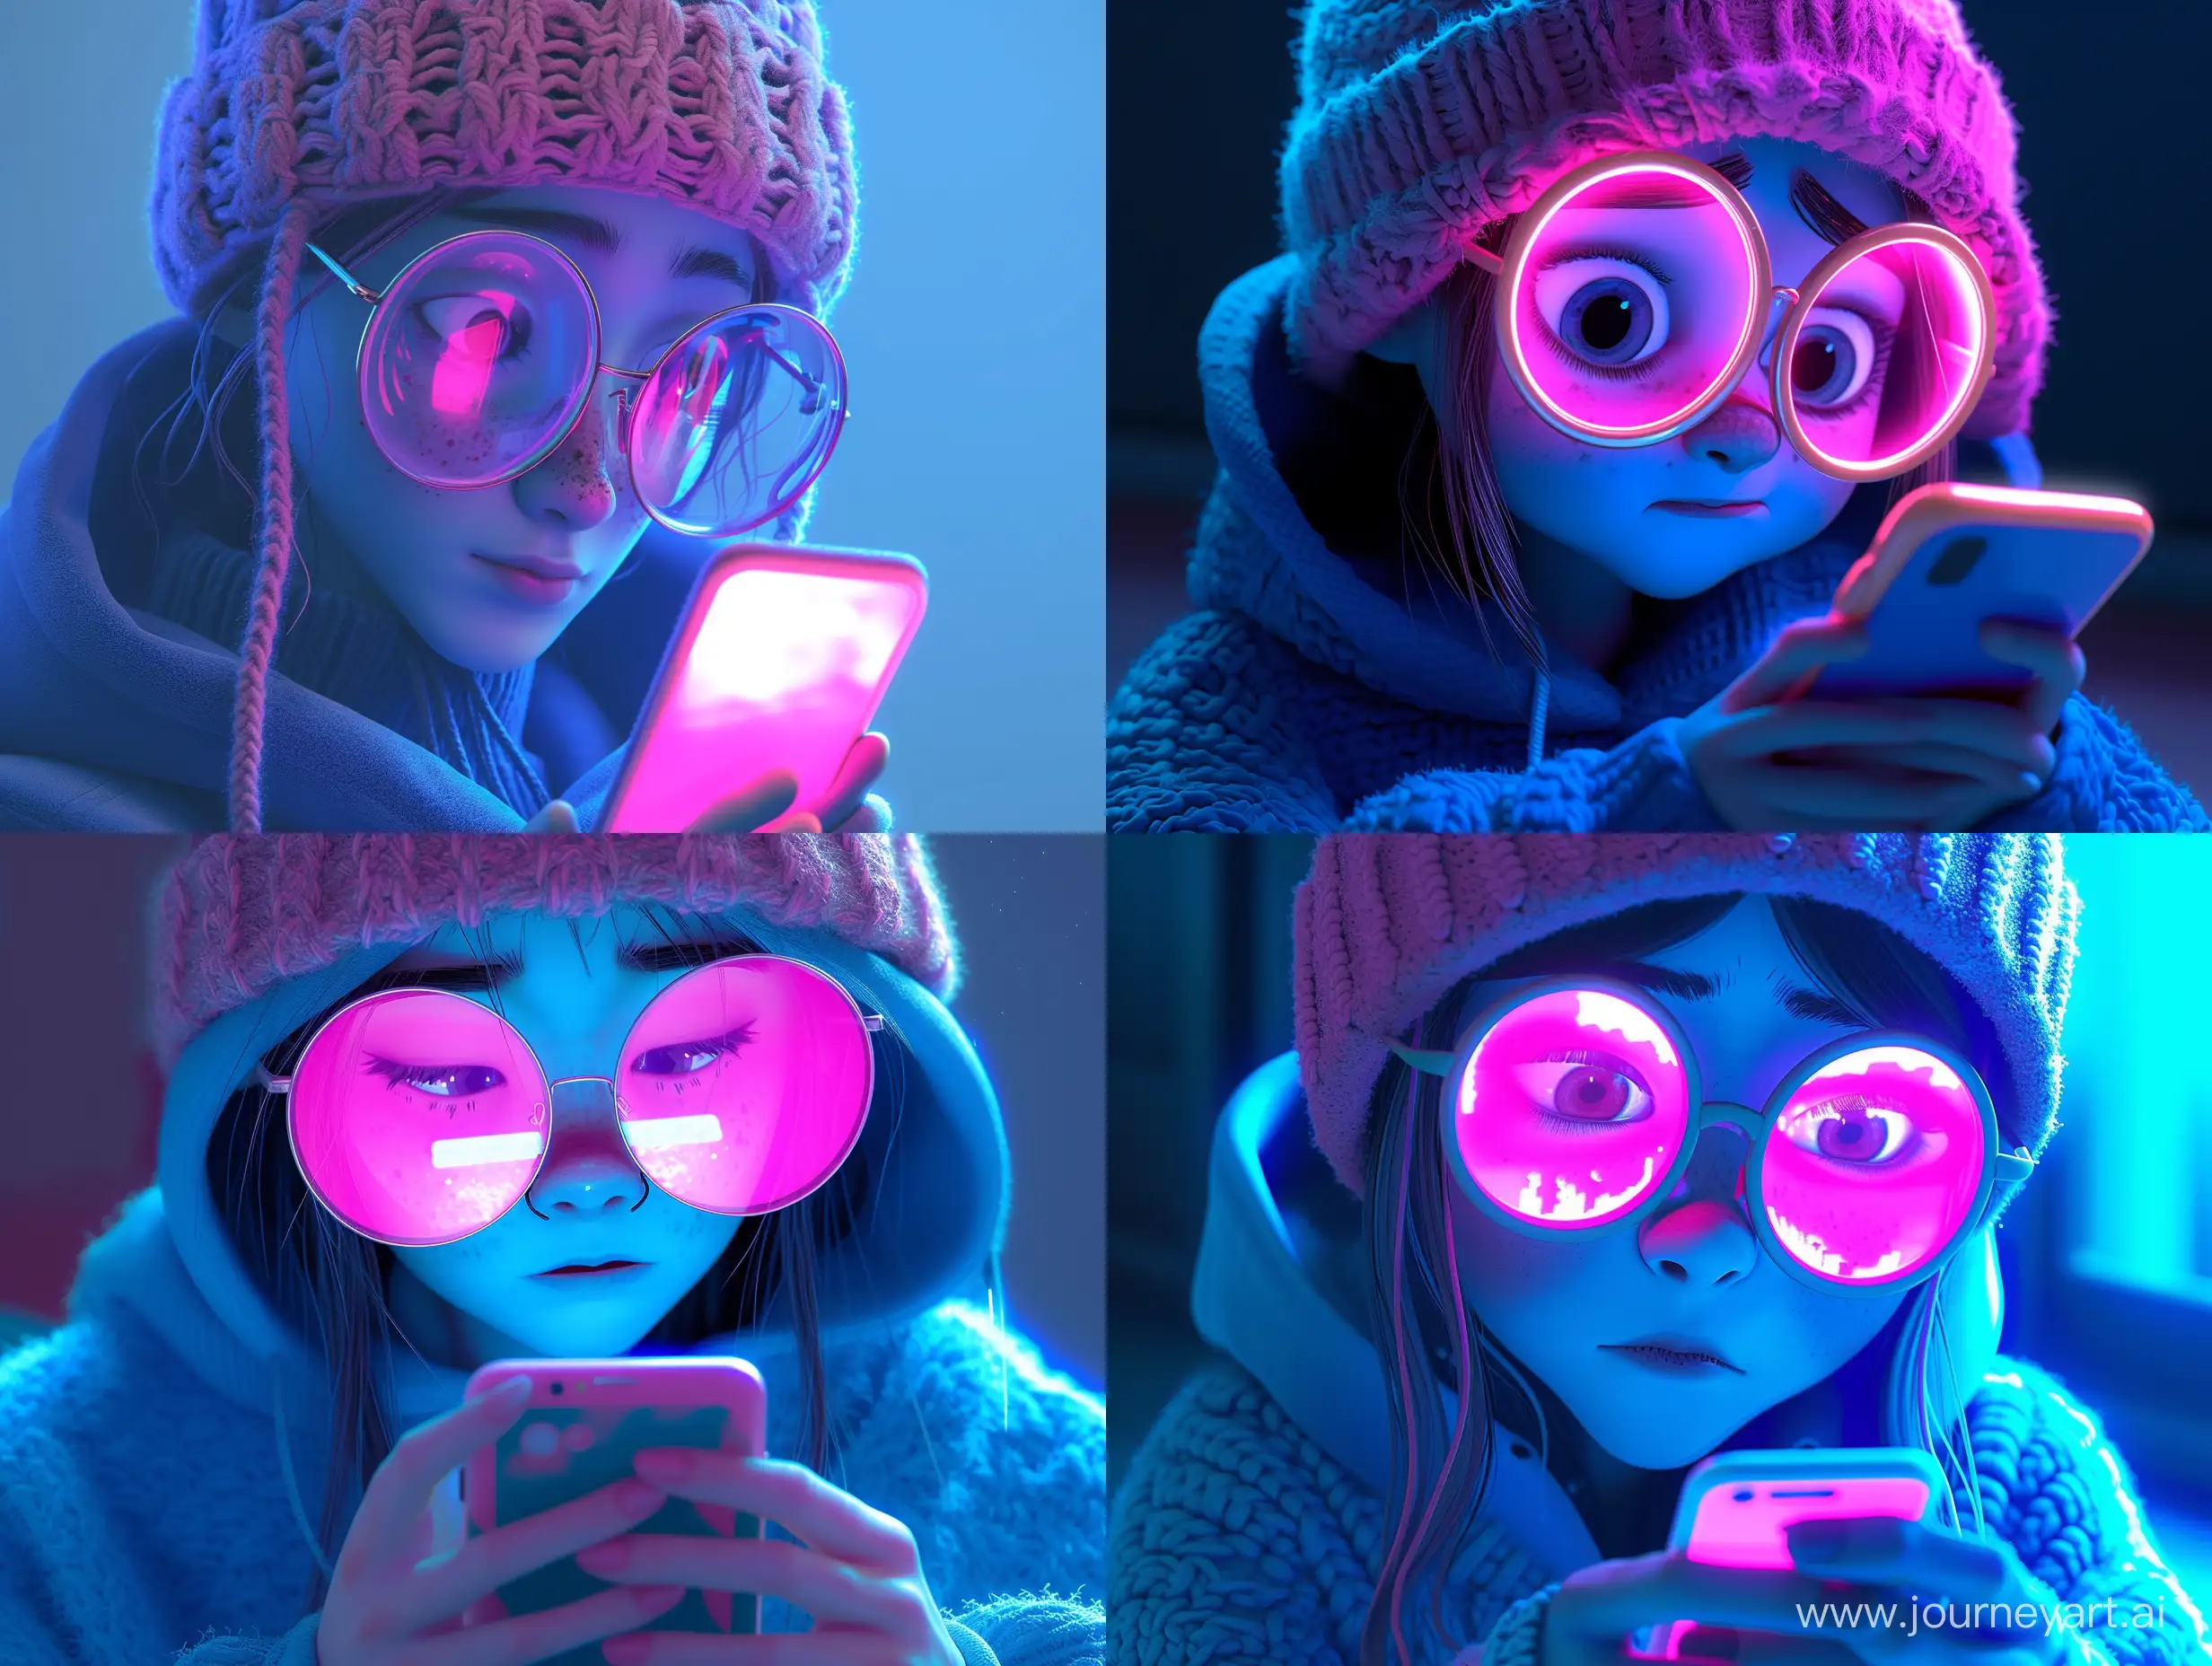 На изображении представлена анимированная девушка смотрящая на свой мобильный телефон. Она носит крупные очки с круглыми стеклами и розовую вязаную шапку. На ней также надета синяя толстовка с капюшоном. Освещение и цвета изображения придают ему неоновый, современный вид. В руках у девушки смартфон, экран которого освещает её лицо ярко-розовым светом, создавая контраст с остальной частью изображения, окрашенной в синие тона. Это стилизованное, возможно, вдохновленное поп-культурой изображение, которое может использоваться в различных медиаформатах.